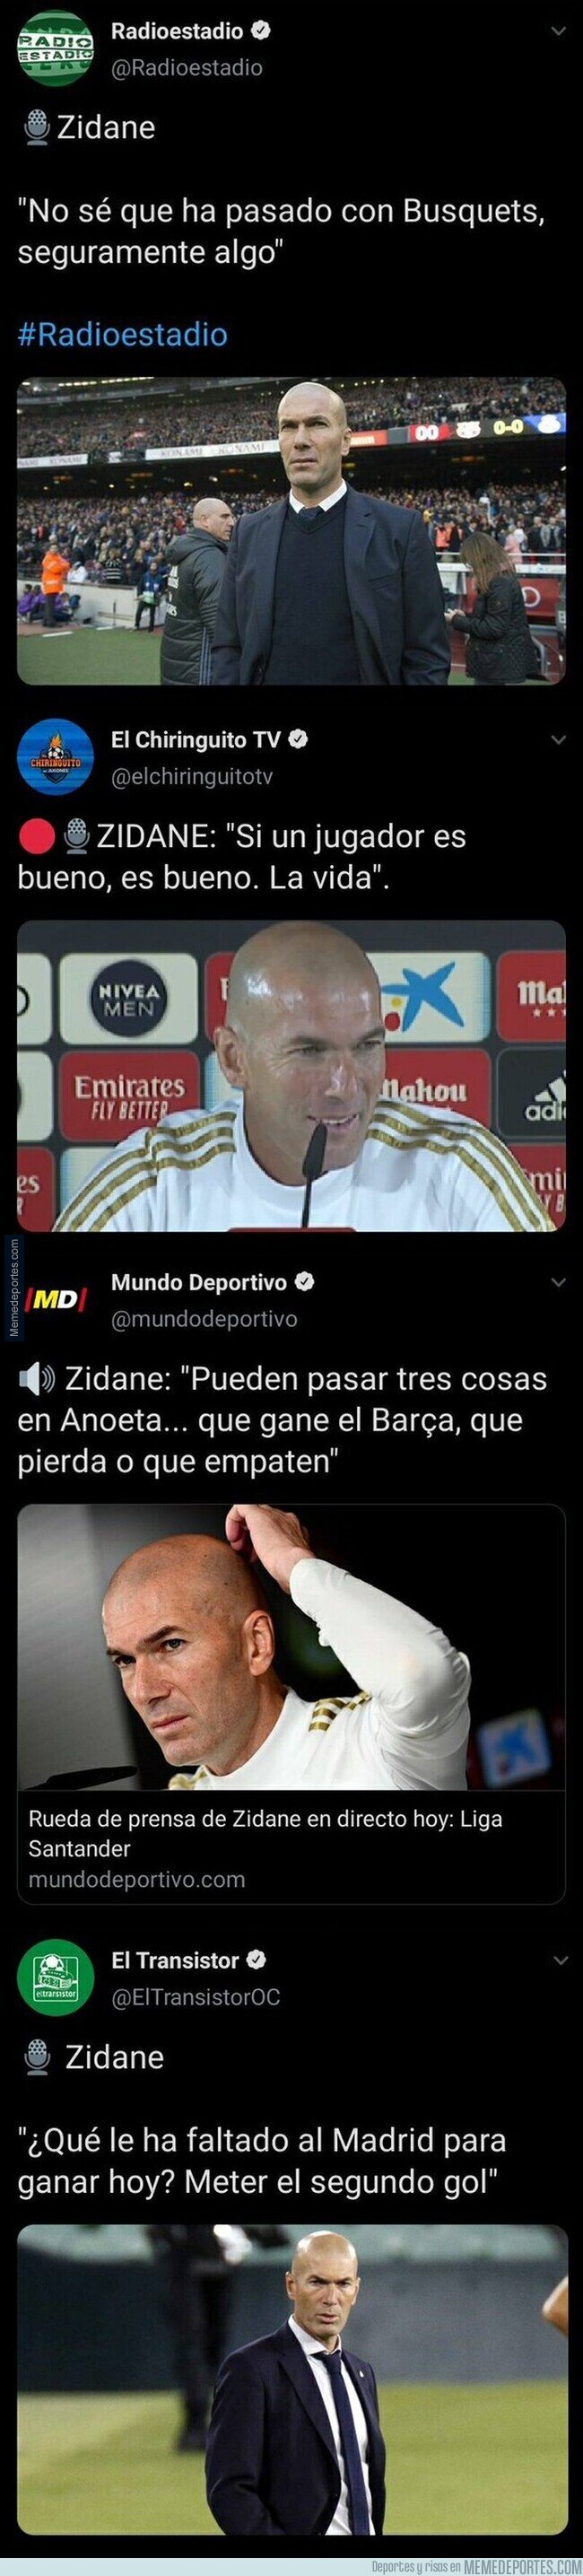 1130292 - Las surrealistas frases que suelta Zidane en plena rueda de prensa con las que todo el mundo se queda muy loco